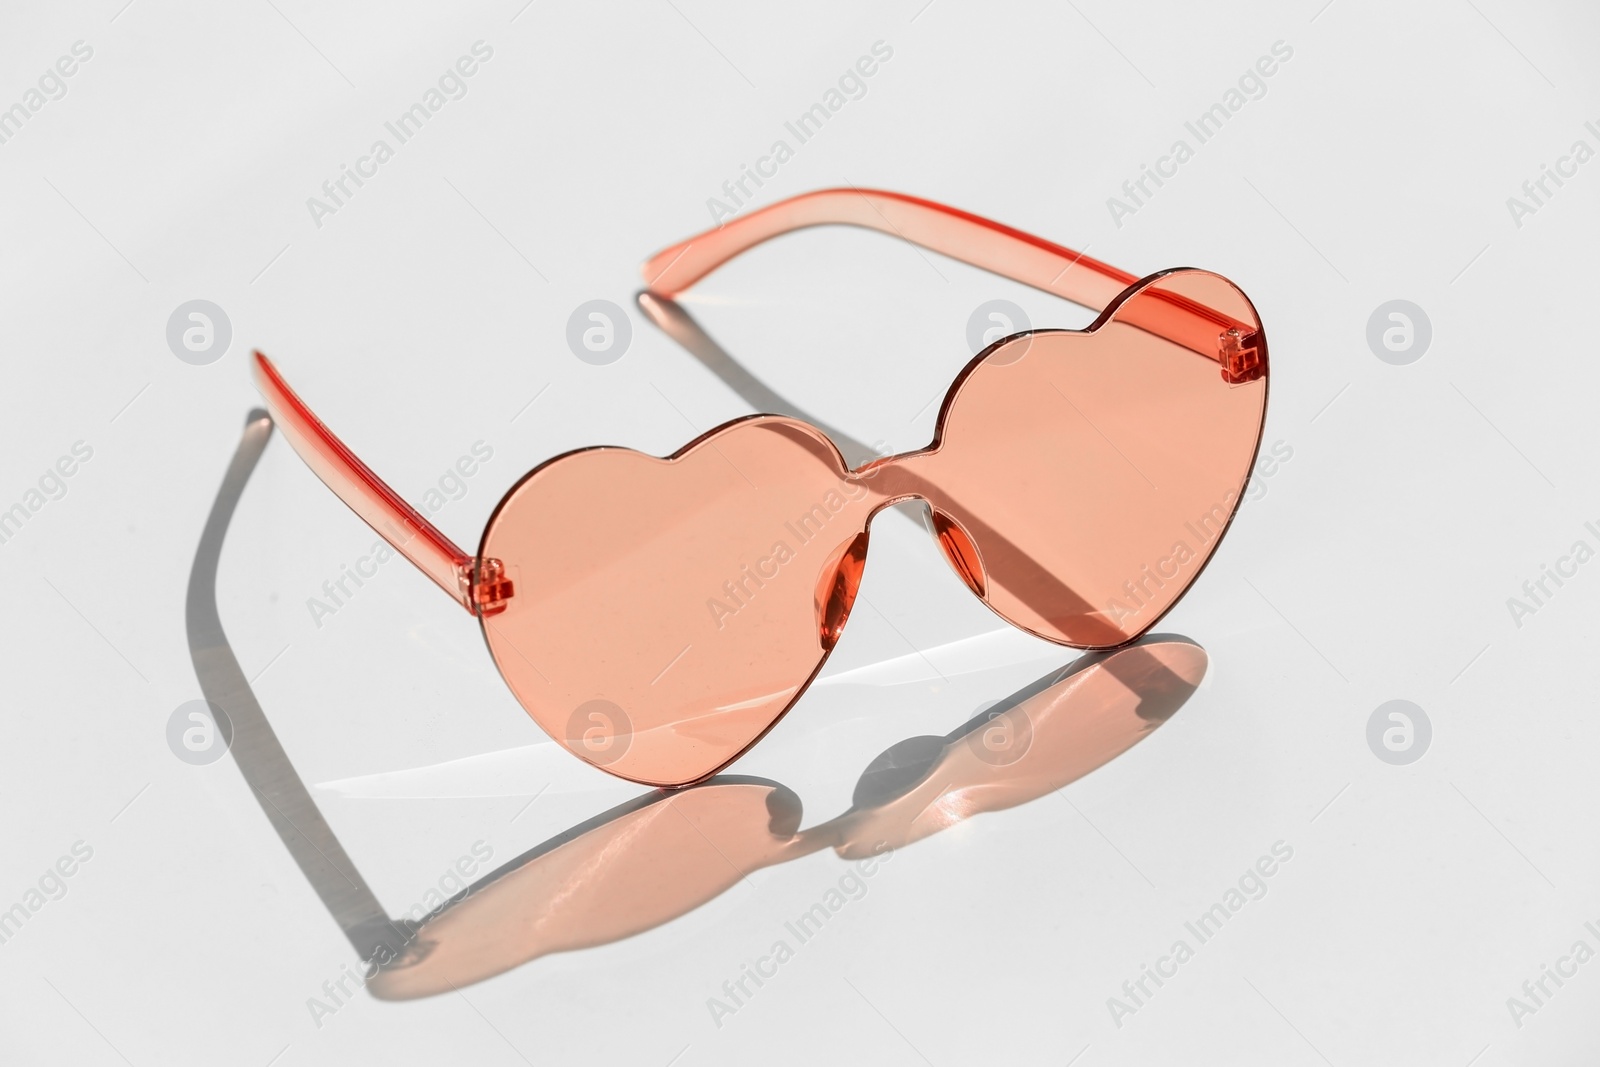 Photo of Stylish heart shaped sunglasses on white background